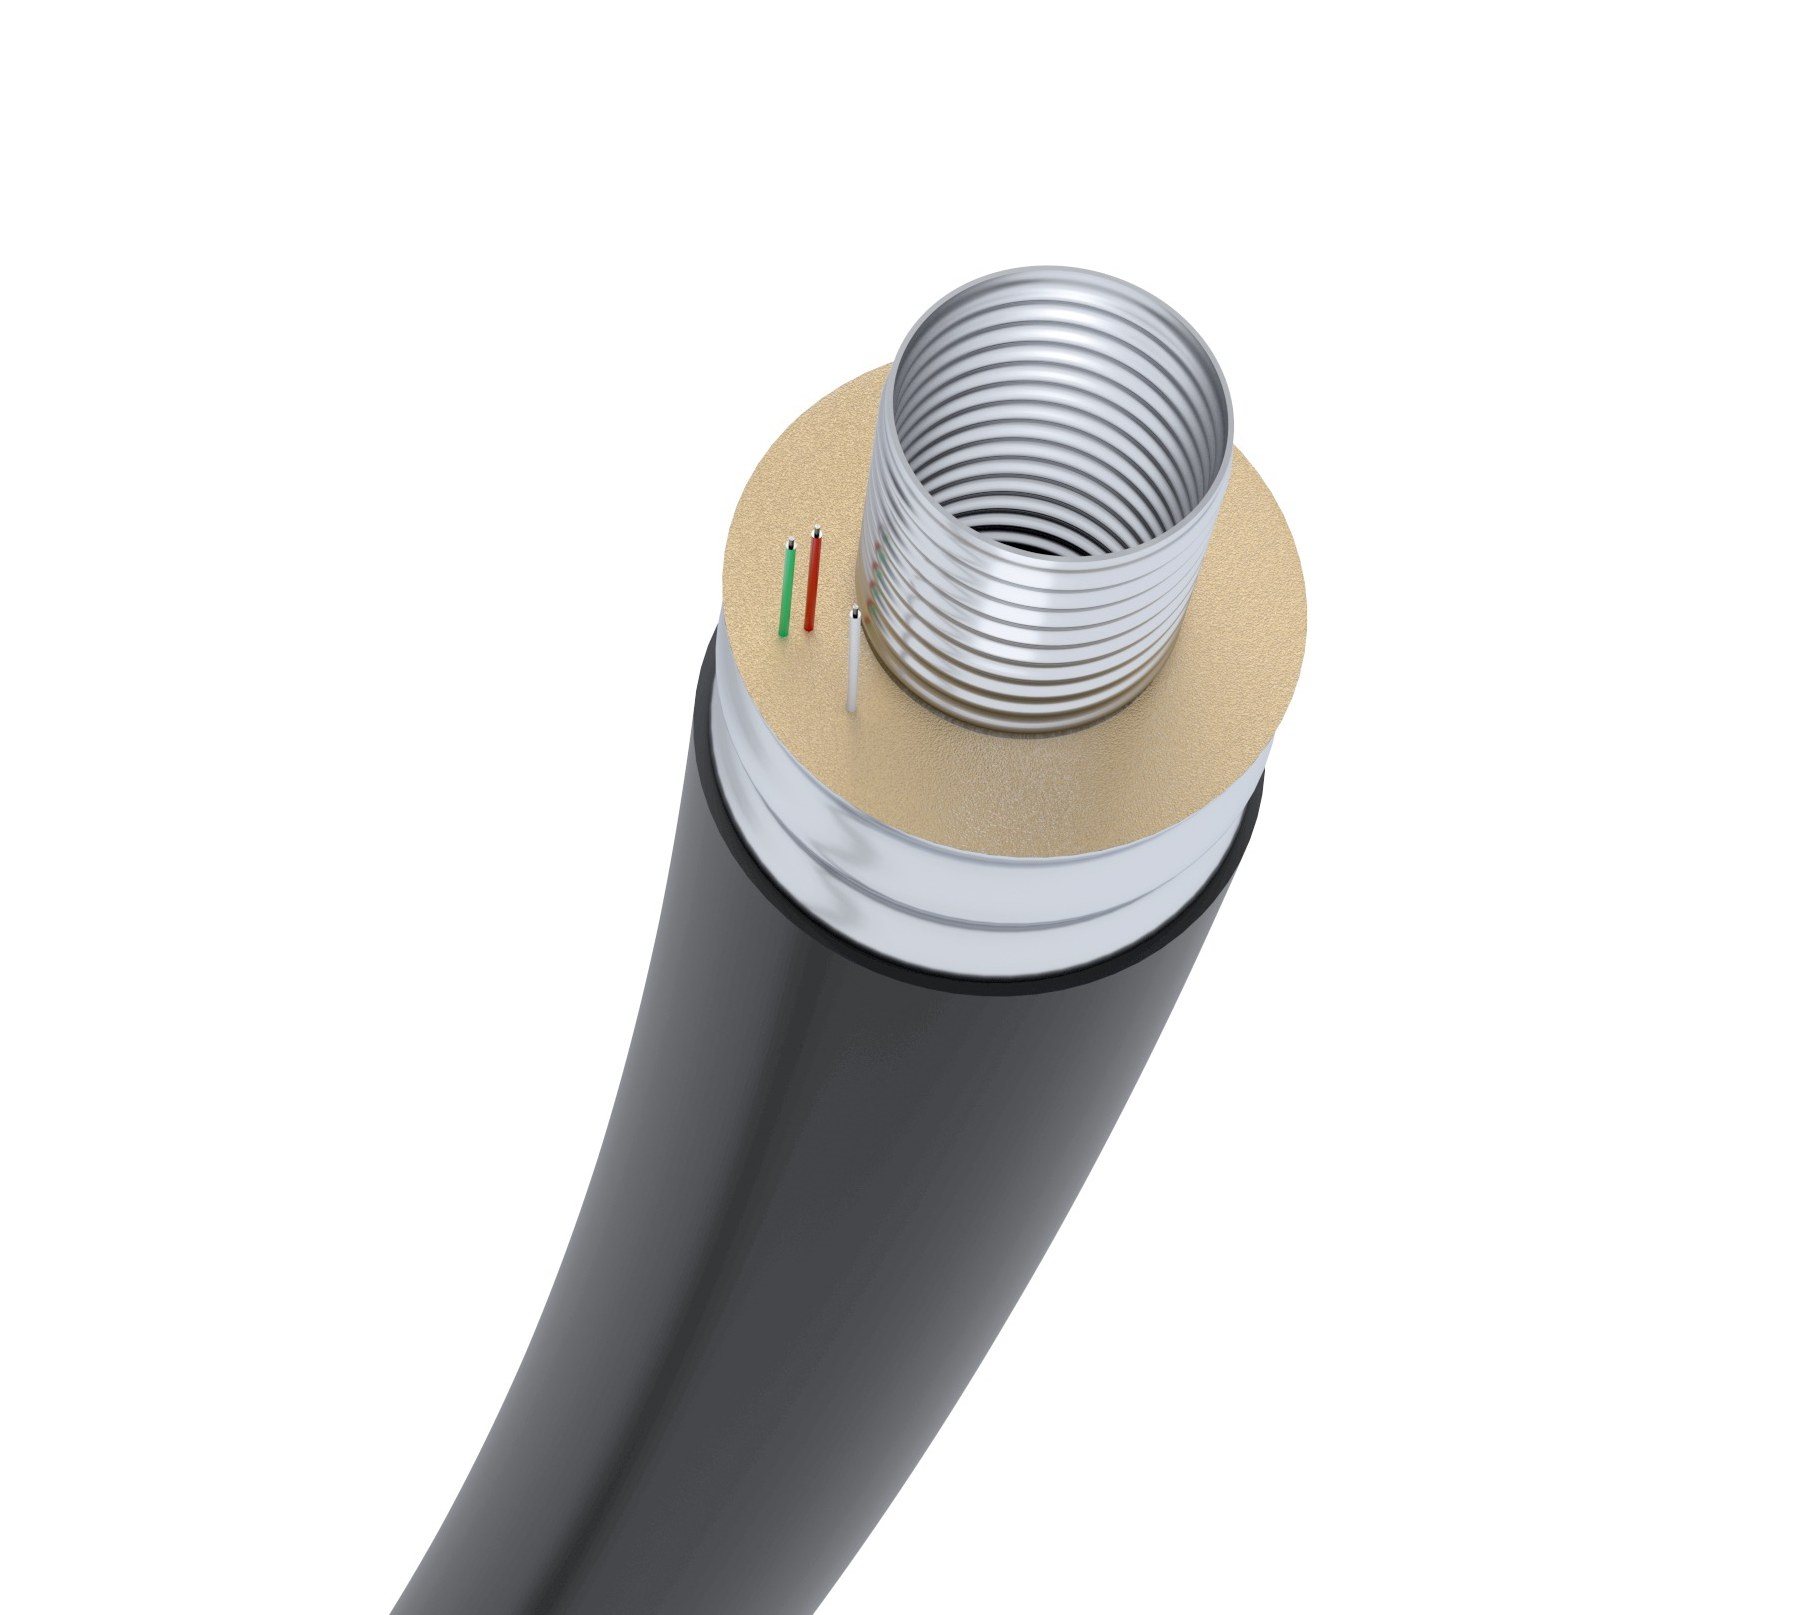 Le tuyau pré-isolé breveté FLEXWELL de Brugg est une conception en acier inoxydable à double paroi avec surveillance des fuites intégrée spécialement conçue pour une utilisation dans le chauffage urbain.